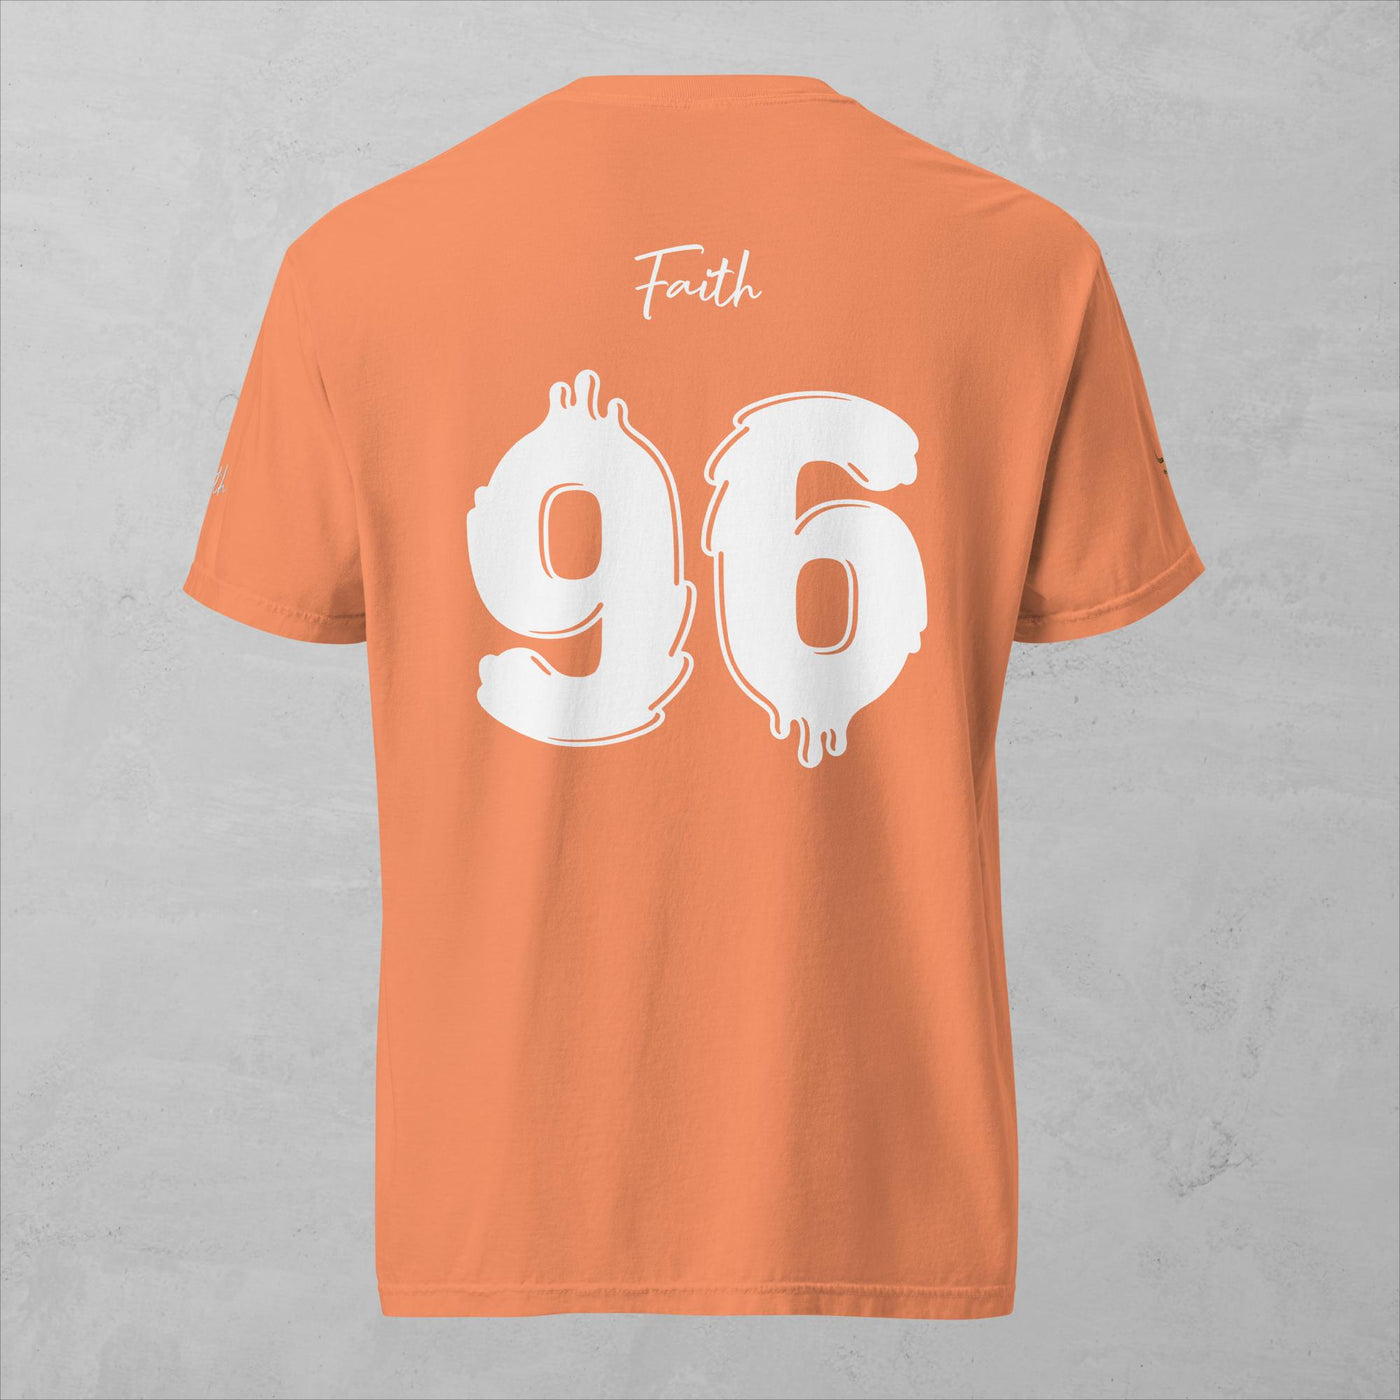 J.A Faith 96 - Men's heavyweight t-shirt